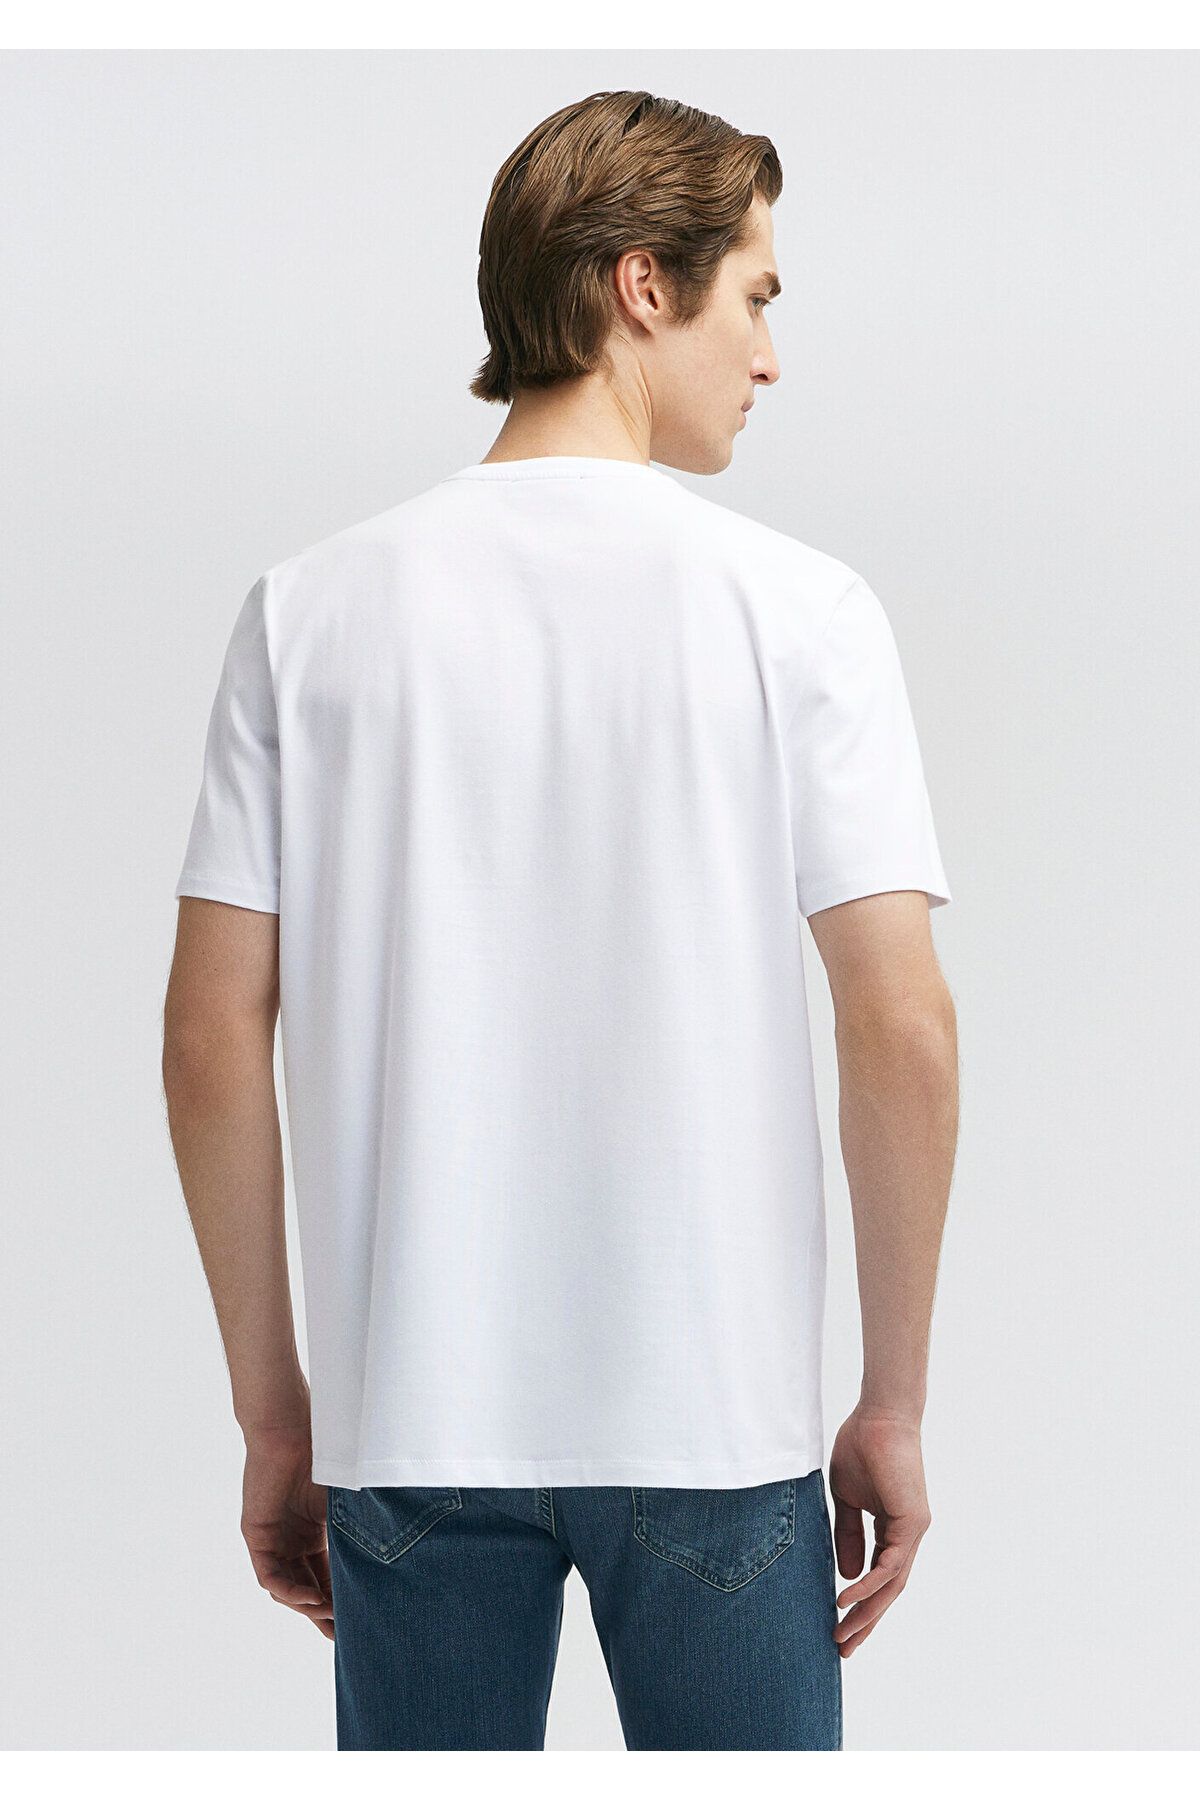 Mavi تی شرت اساسی سفید مناسب / کلاس معمولی 0610252-620